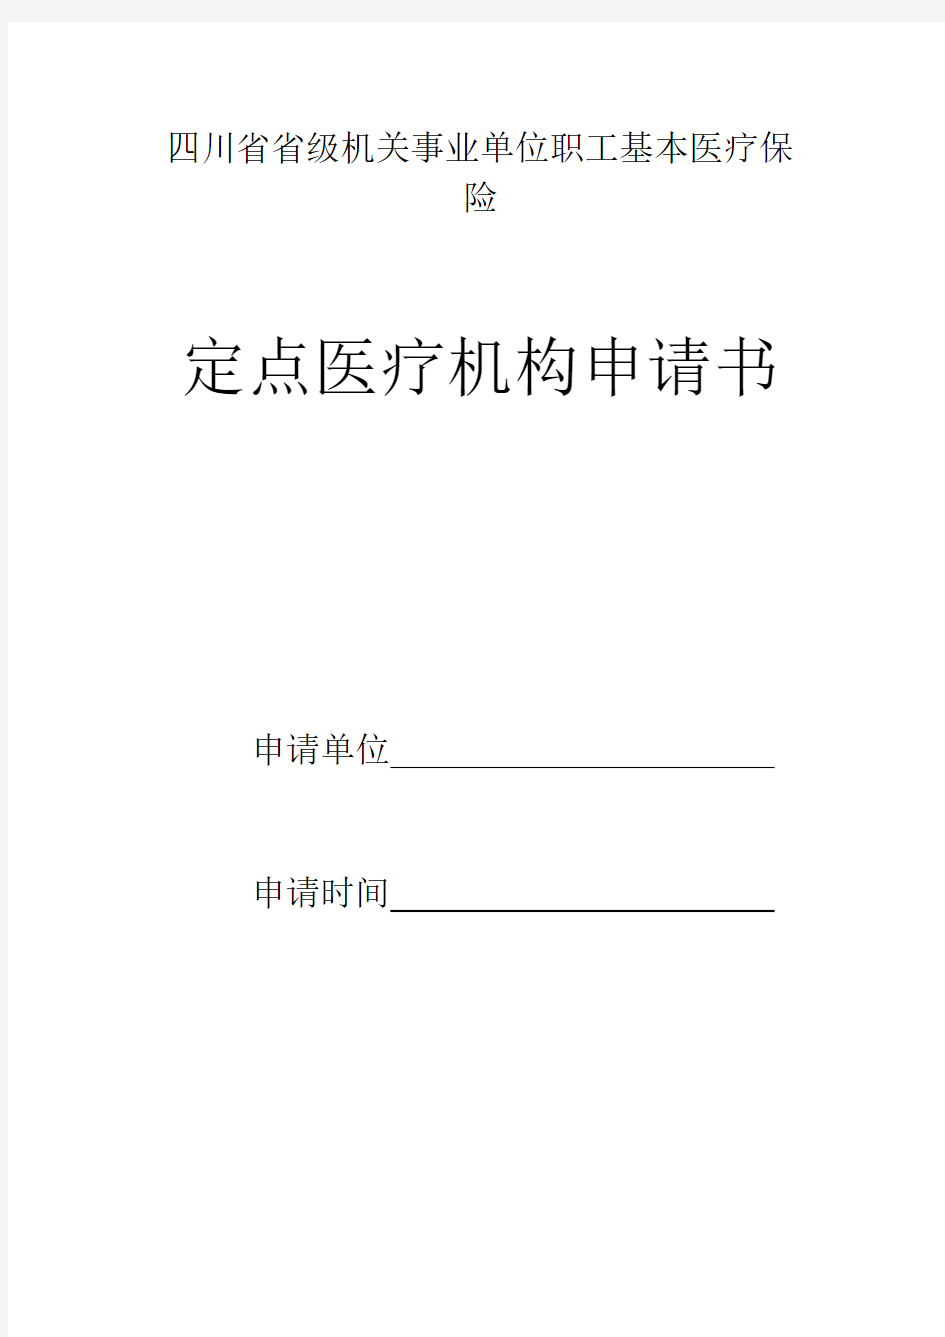 四川省省级机关事业单位职工基本医疗保险定点医疗机构申请书申